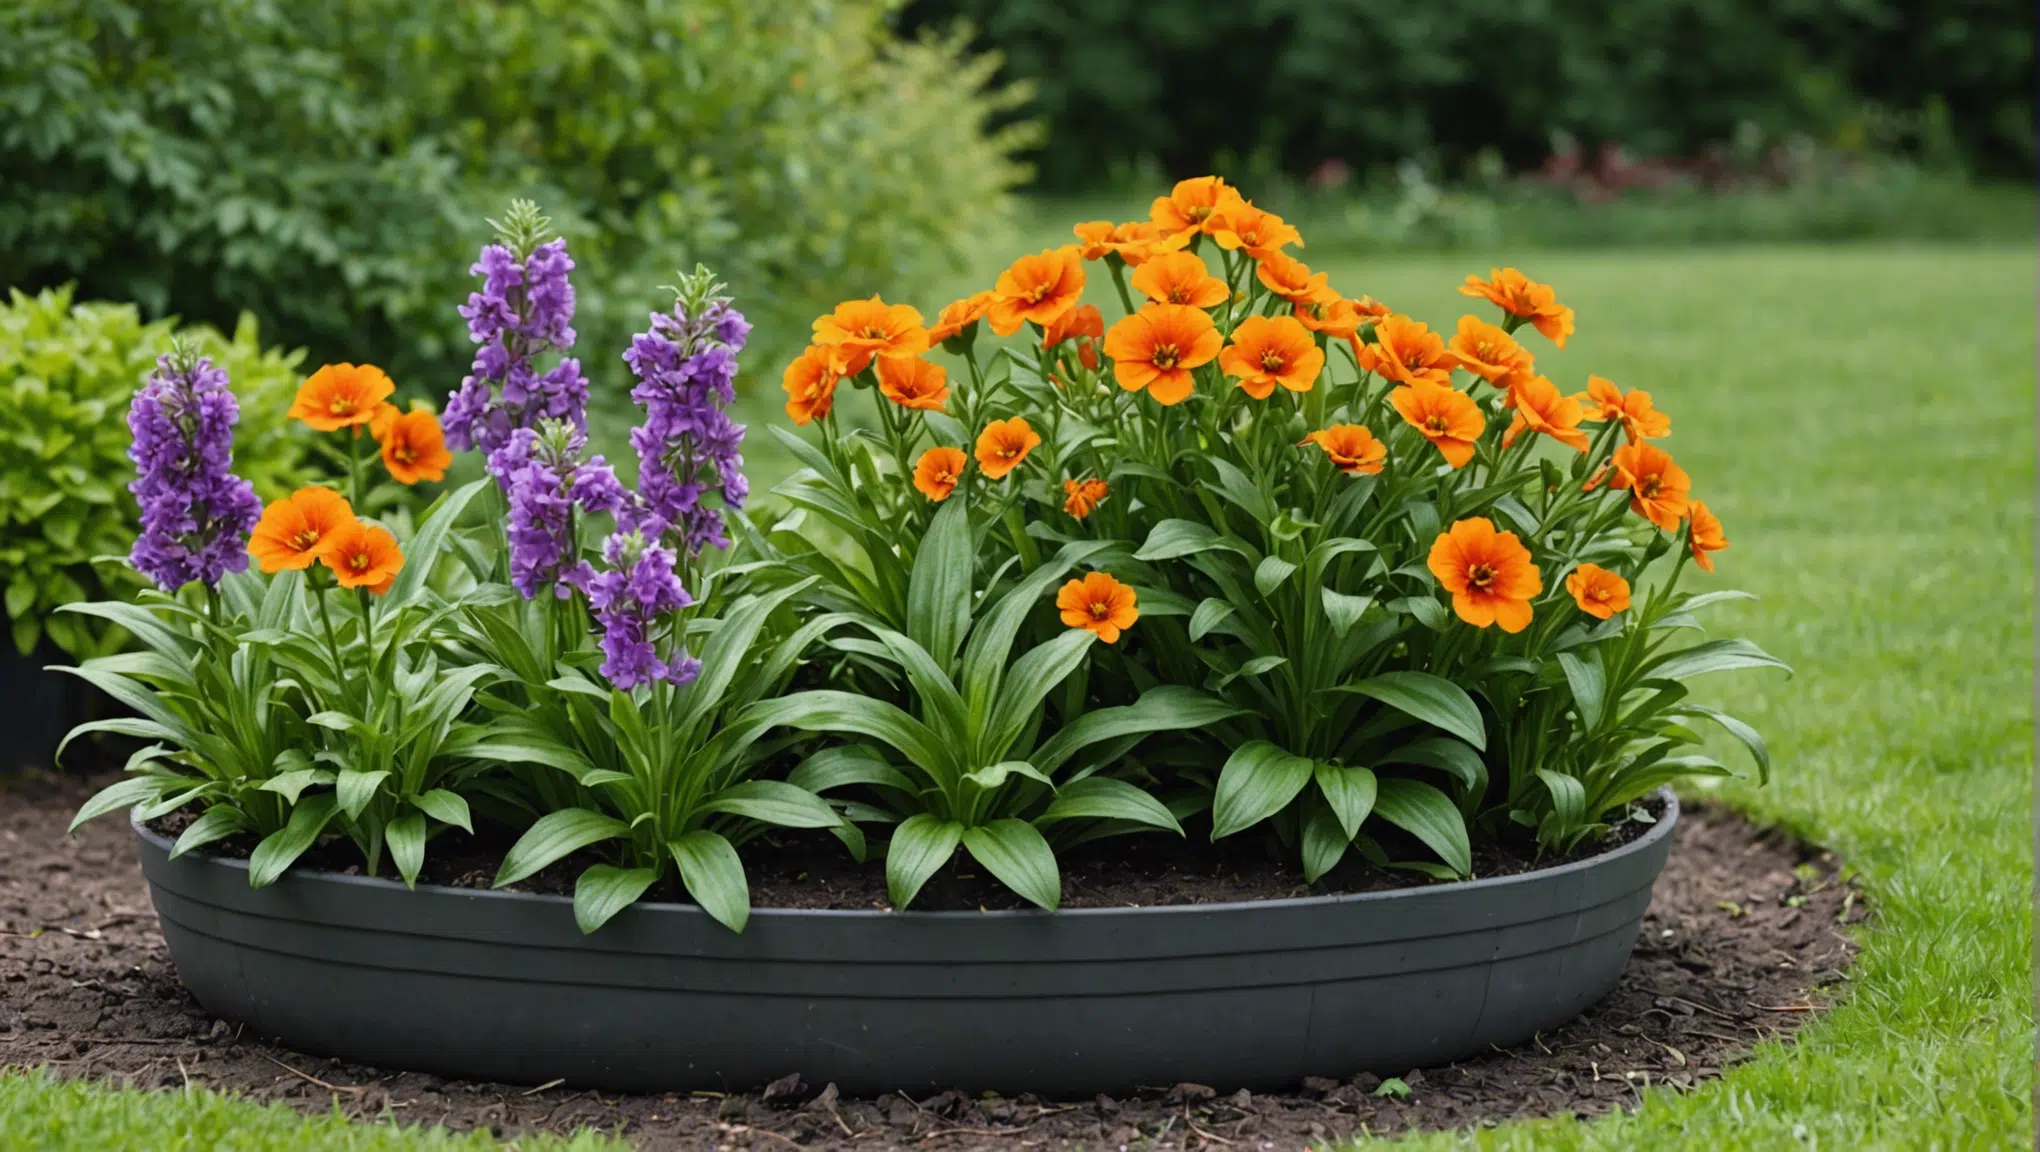 découvrez les plantes vivaces les plus simples à cultiver dans votre jardin et profitez de leur beauté année après année. trouvez des conseils de jardinage et d'aménagement pour des plantes robustes et sans effort.